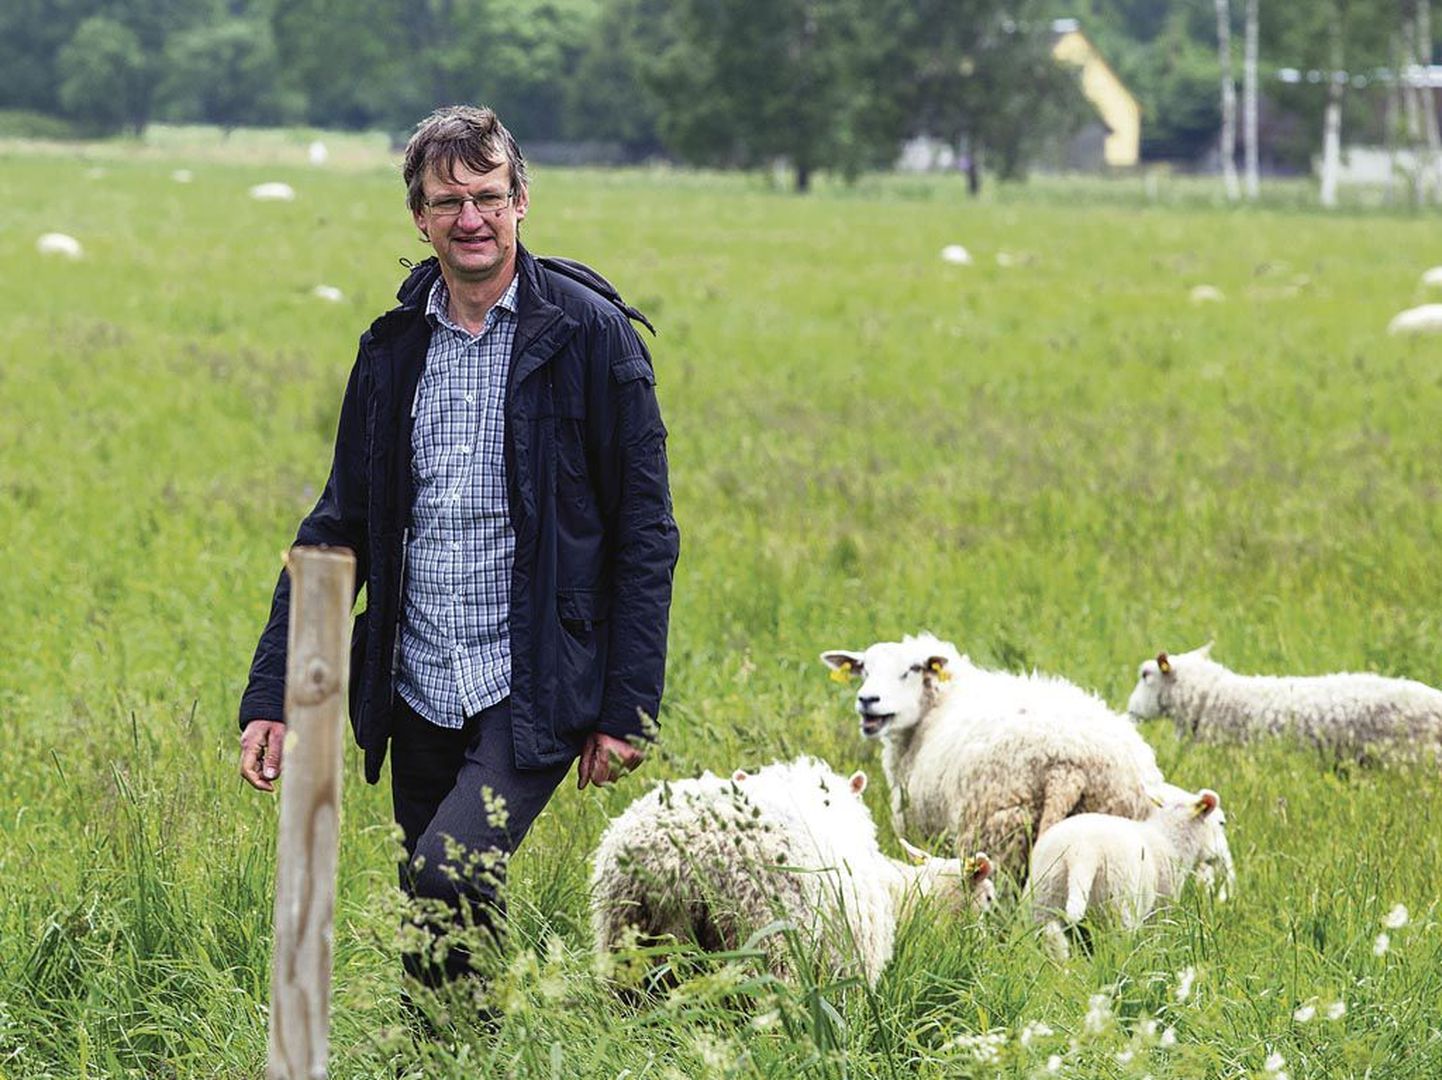 "Pean lambaid hoidma kodu lähedal koplis, selle asemel et nad rannakarjamaad madalmuruseks näriksid, sest šaakalite kahjud ületavad igasuguse piiri," ütleb Tautsi talu peremees Urmas Aava.